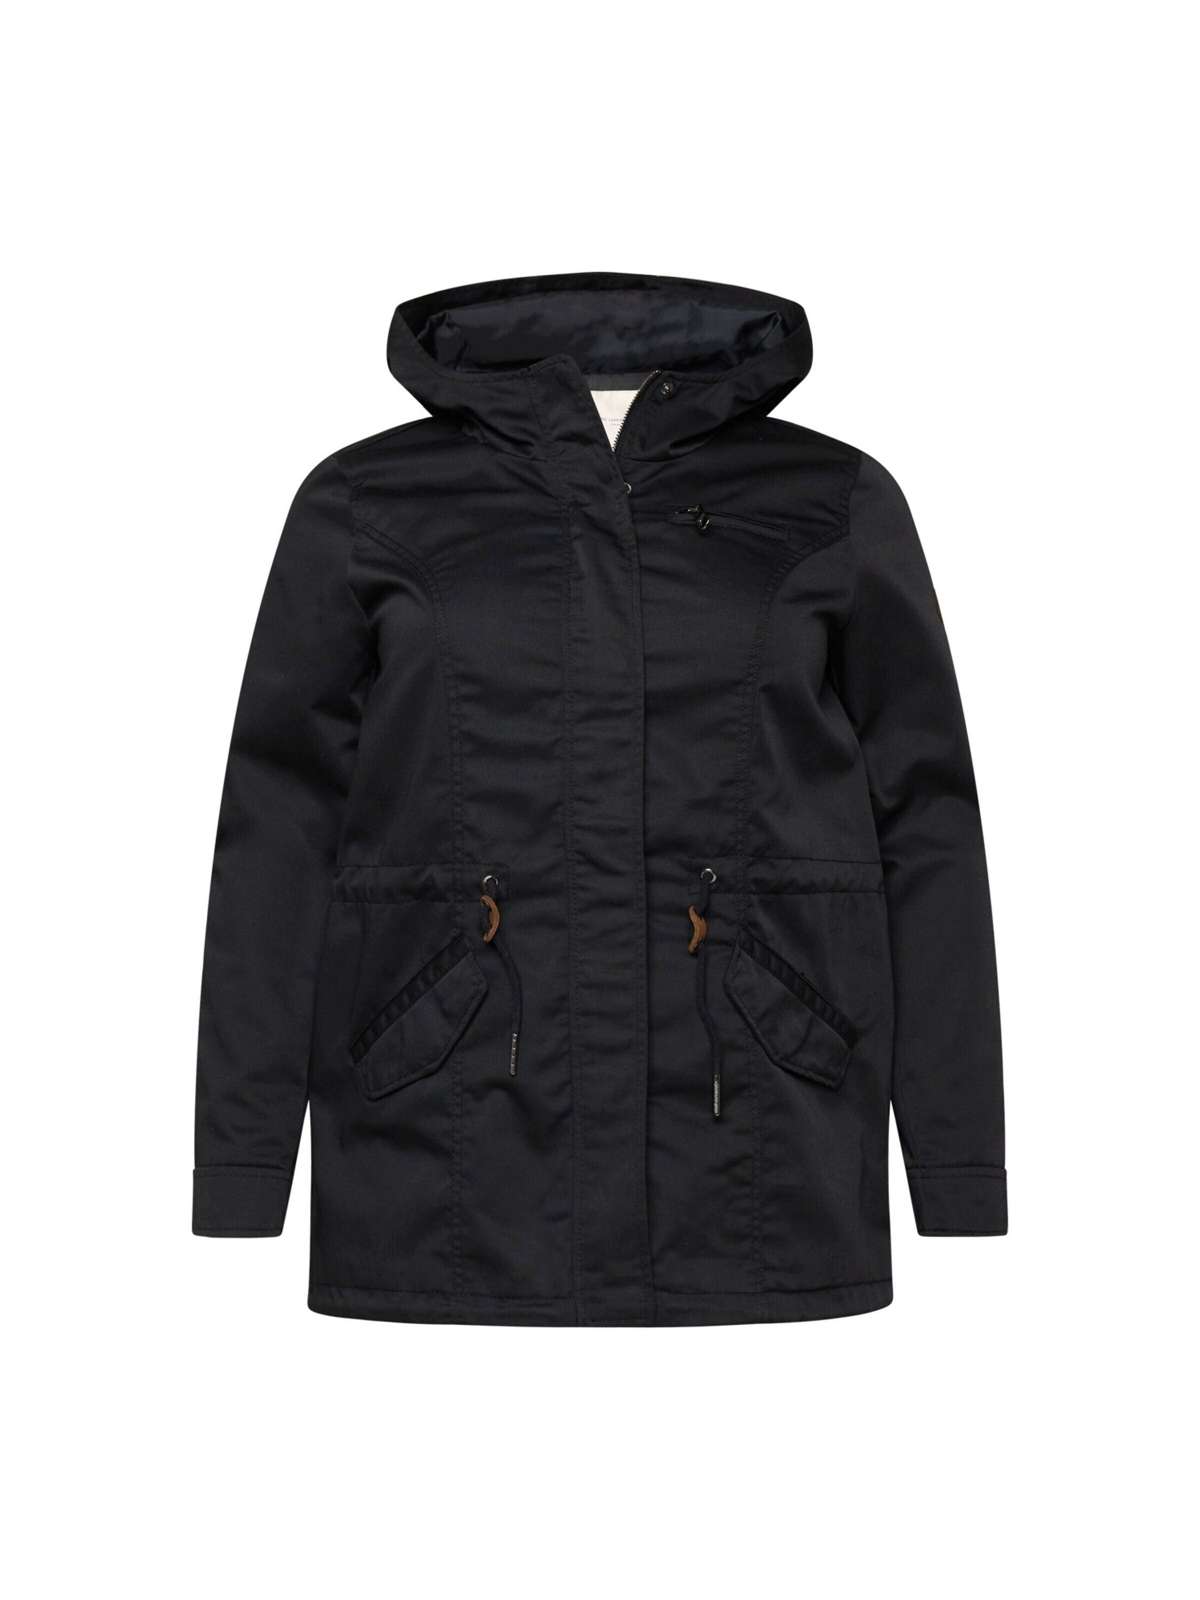 Блузон-переходная куртка-парка с капюшоном оверсайз CARLORCA 4813 черного цвета